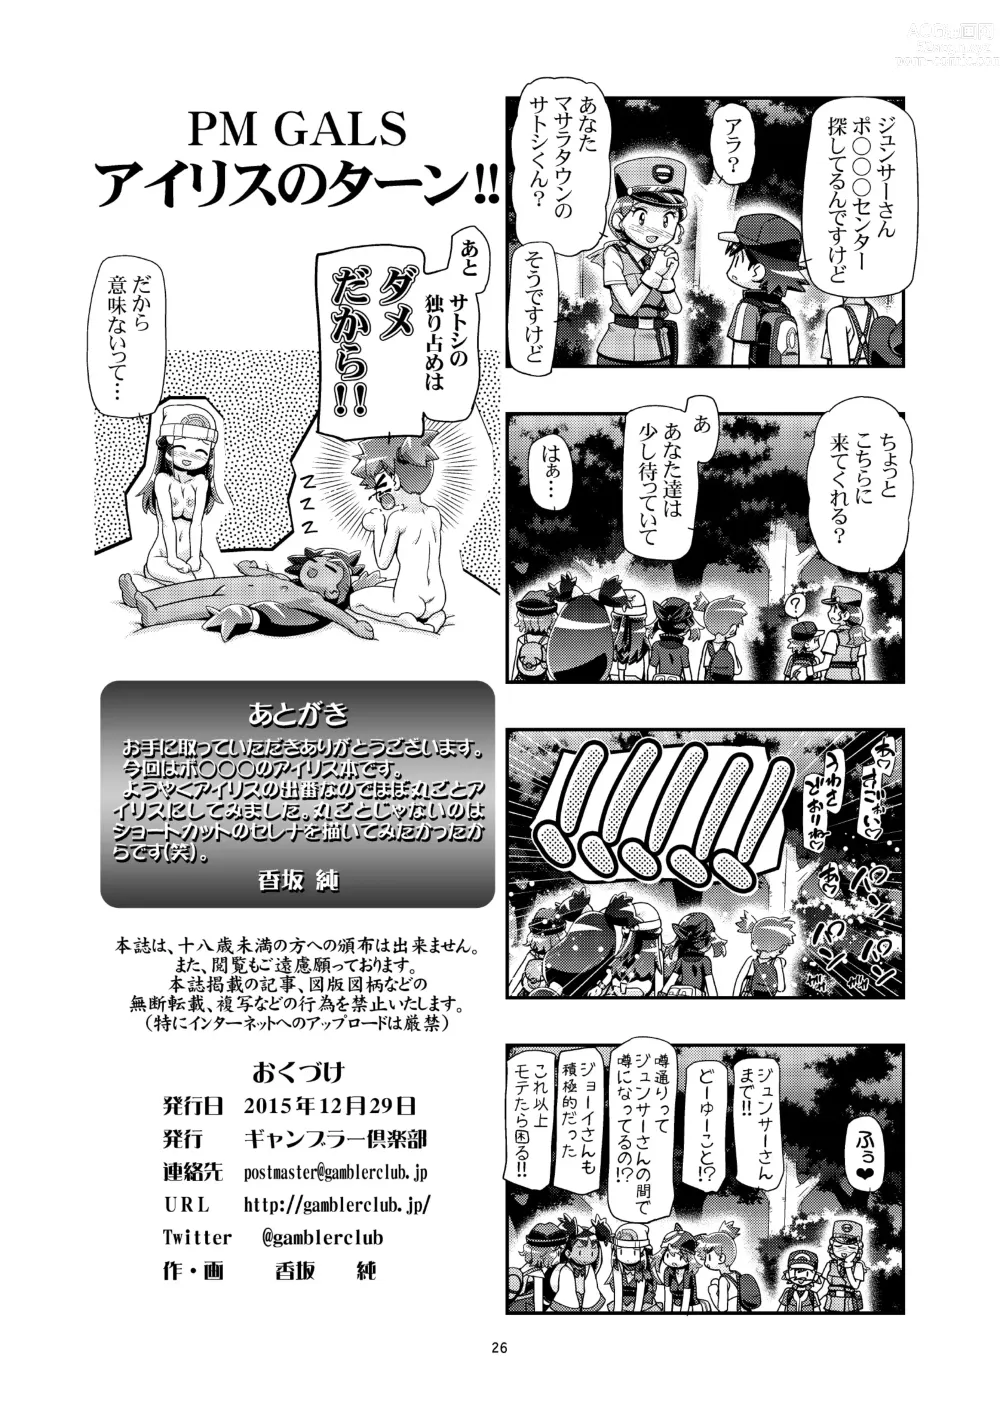 Page 25 of doujinshi PM GALS Iris no Turn!!